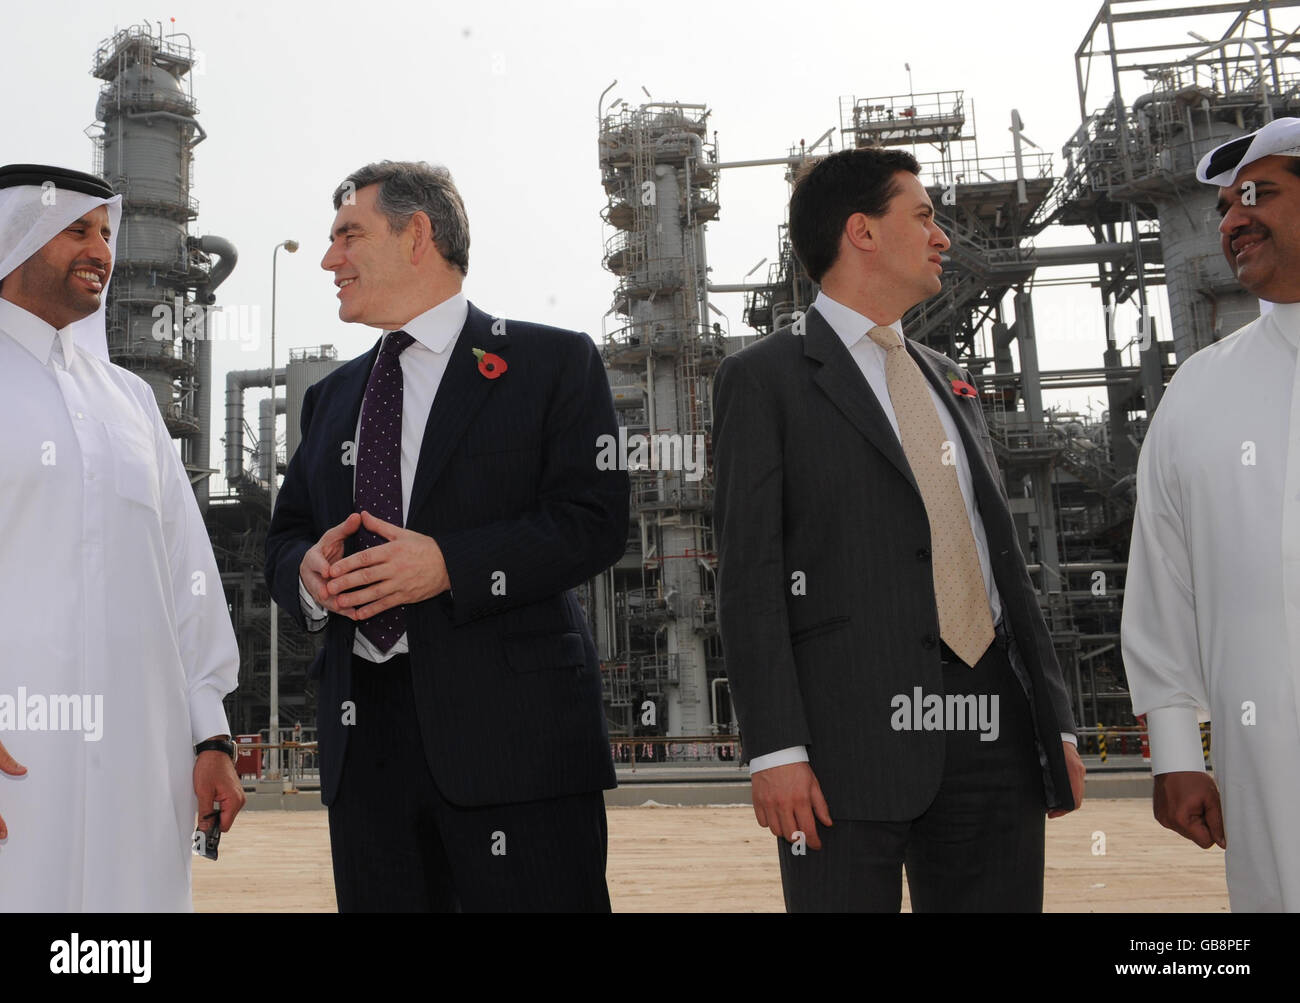 Il primo ministro Gordon Brown (secondo a sinistra) e il ministro per l'energia e il cambiamento climatico ed Miliband sono presenti intorno alla centrale di gas Ras Laffan in Qatar, che potrebbe fornire fino al 20% del fabbisogno di gas britannico in futuro. Foto Stock